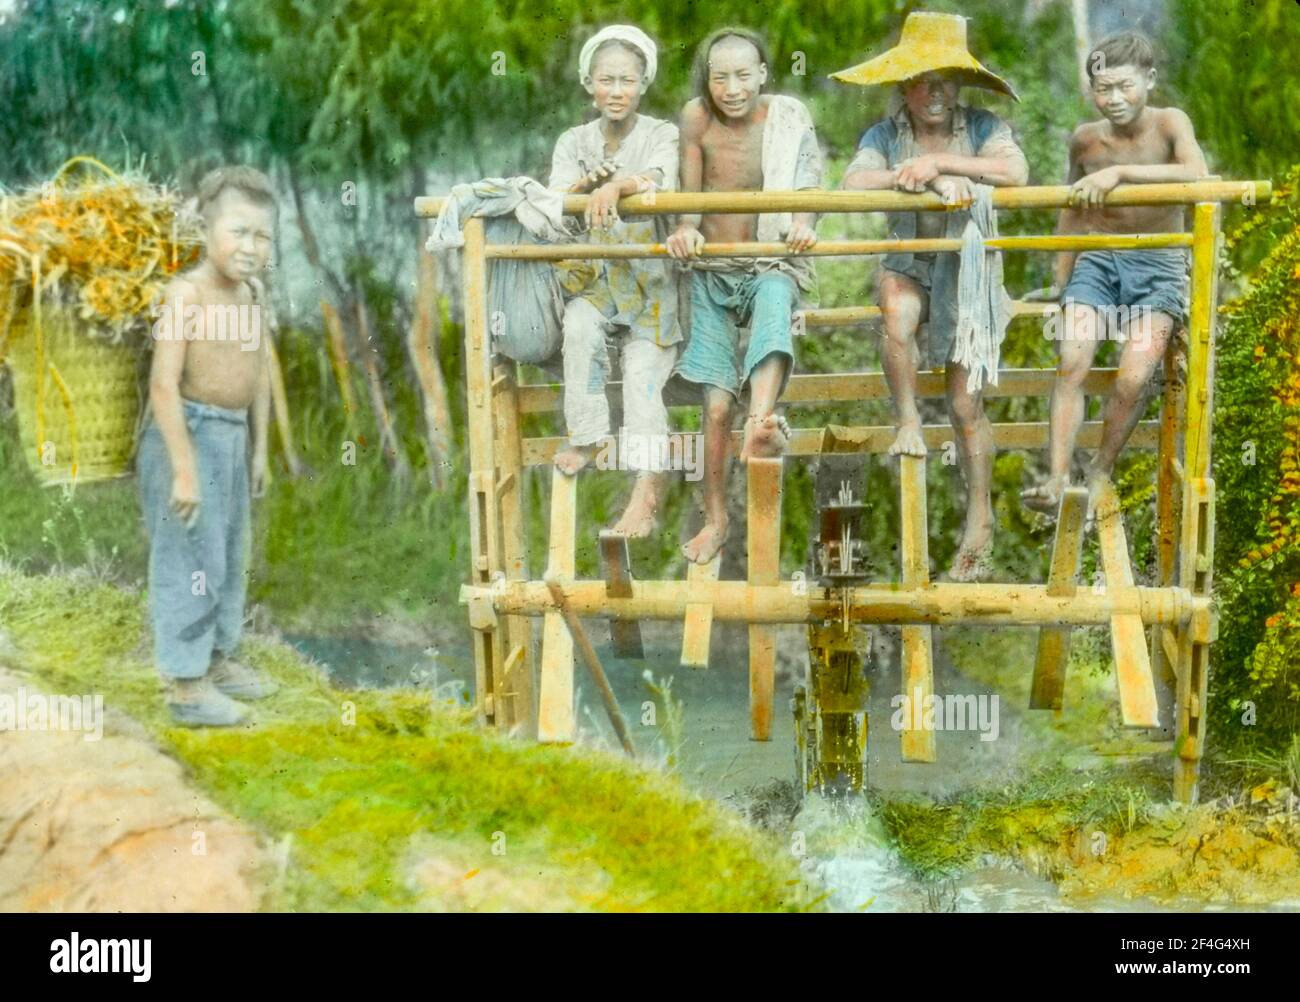 Plusieurs garçons utilisent leurs pieds pour pomper de l'eau à travers une roue en bois, avec un deuxième garçon portant un panier très chargé sur la rive de la rivière, Sichuan, Chine, 1917. De la collection de photographies Sidney D. Gamble. () Banque D'Images